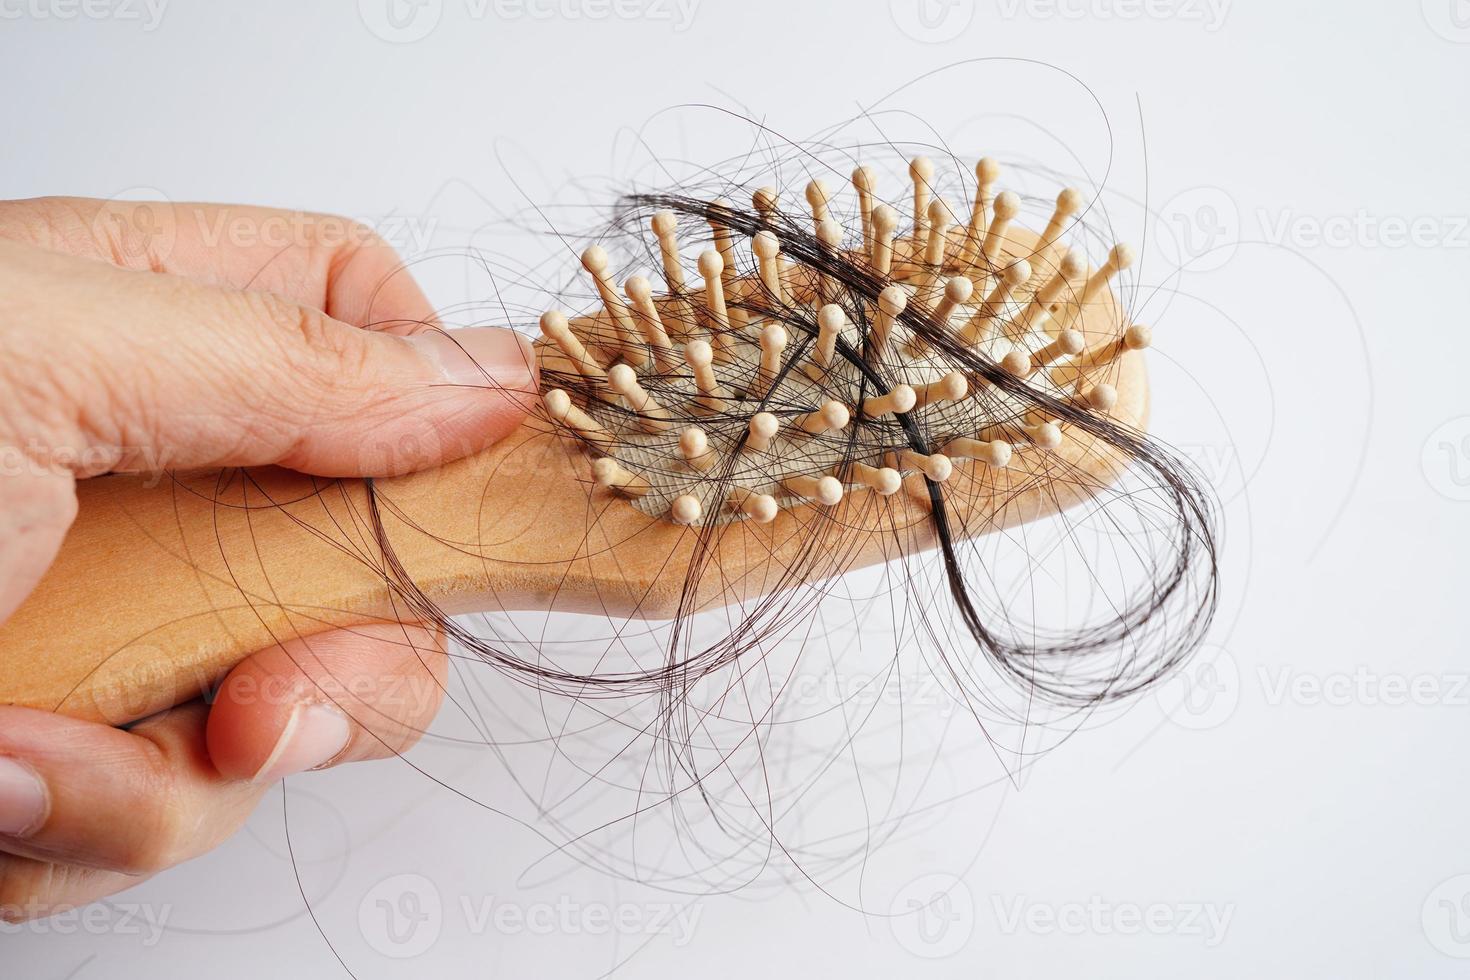 une femme asiatique a un problème avec la perte de cheveux longs attachée à la brosse à peigne. photo